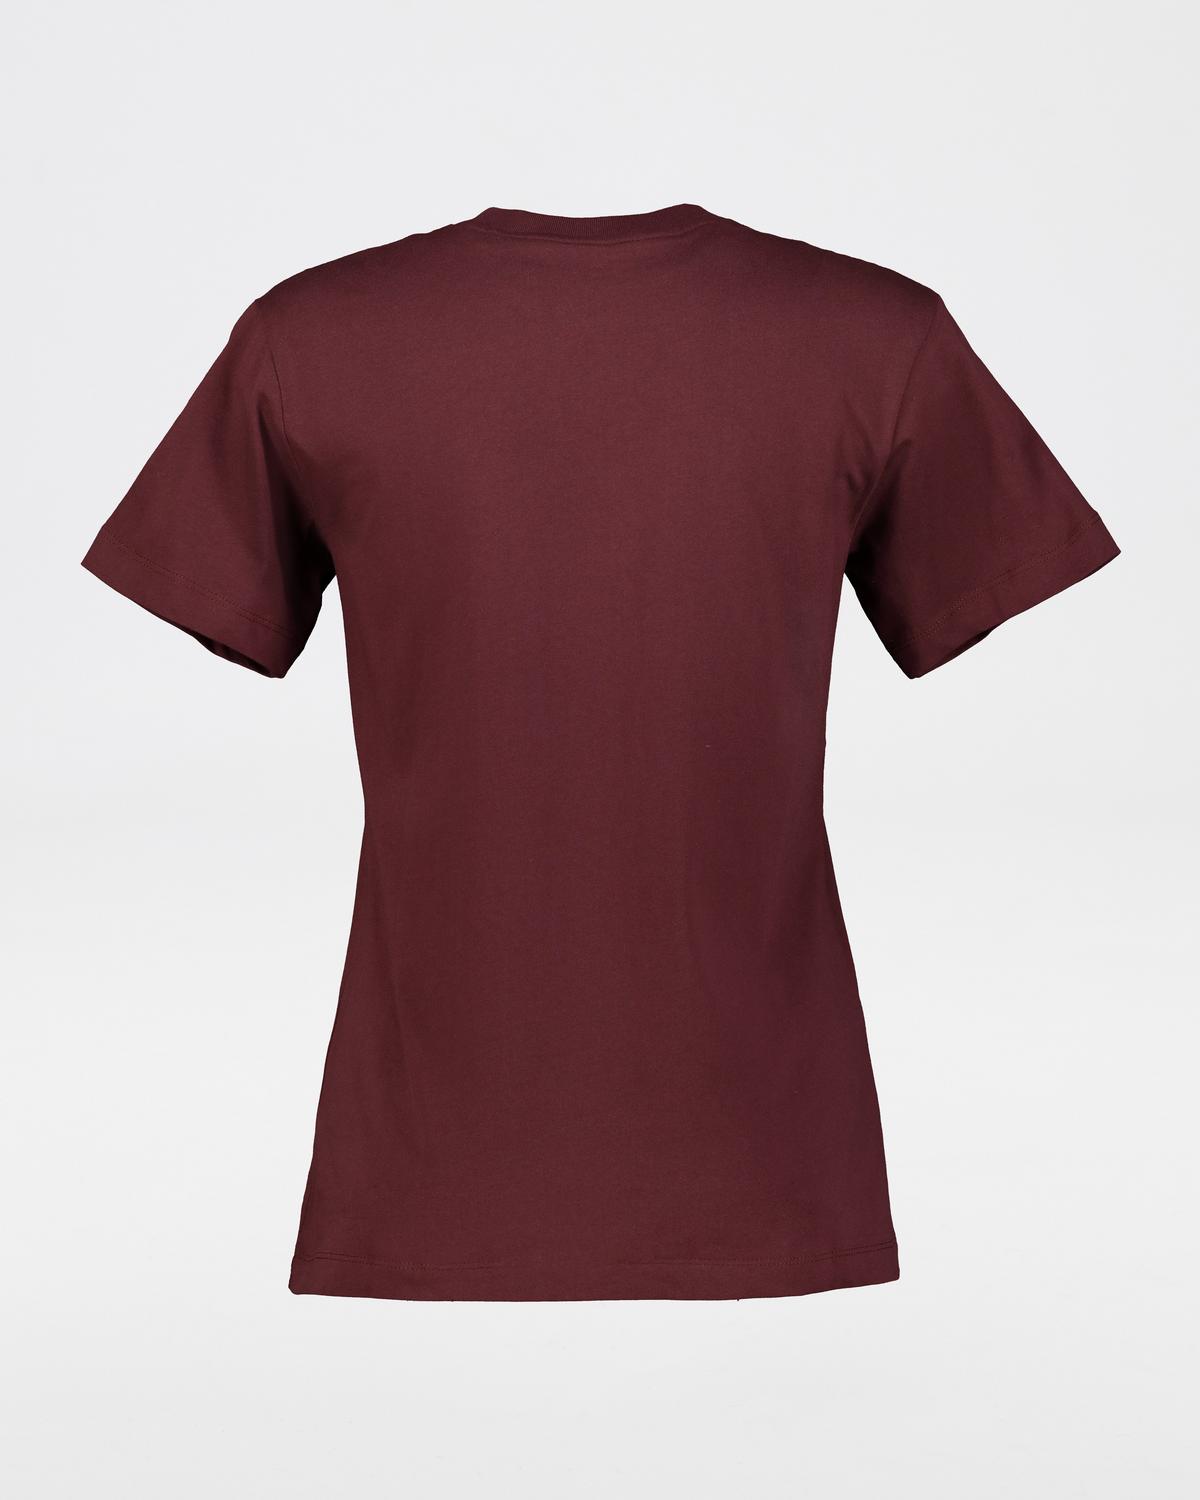 Jack Wolfskin Women’s Essential Slim Fit Cotton T-shirt -  Burgundy